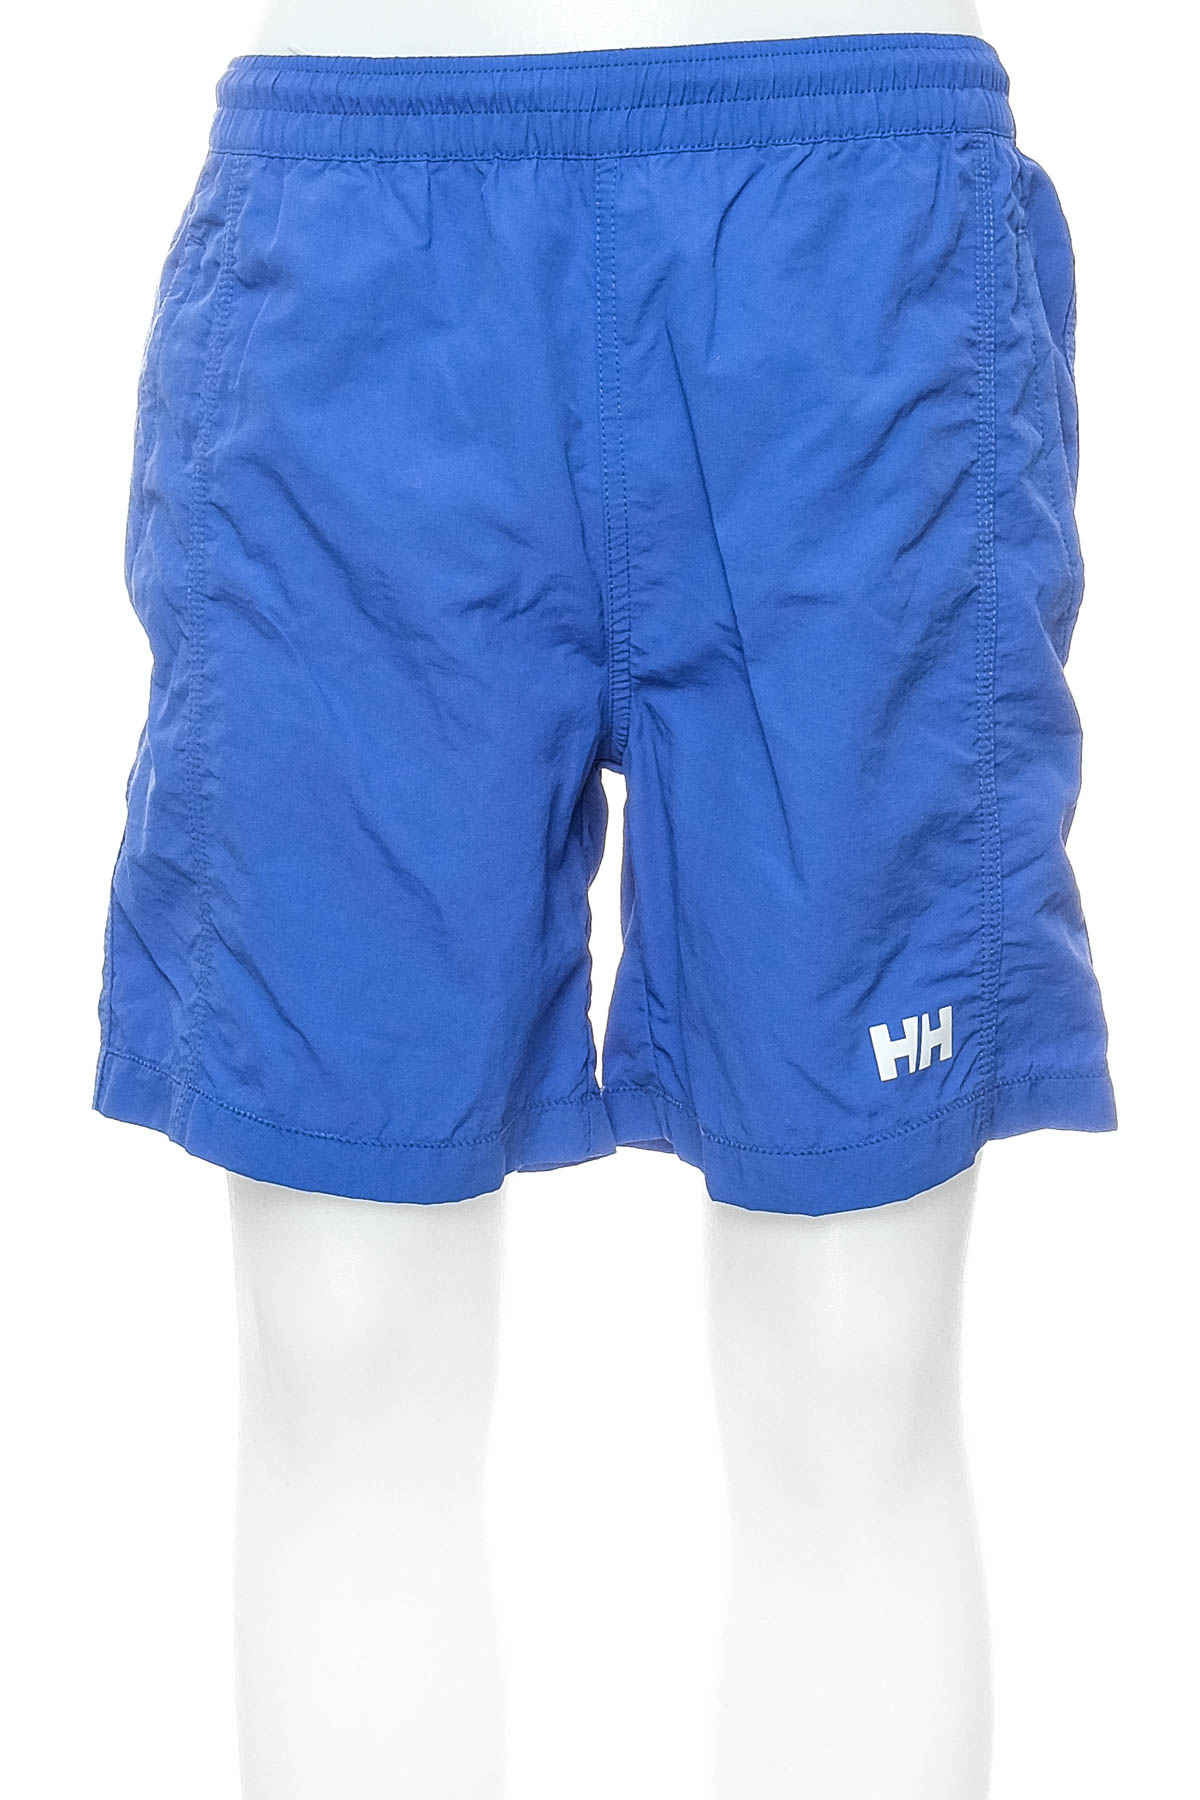 Men's shorts - Helly Hansen - 0